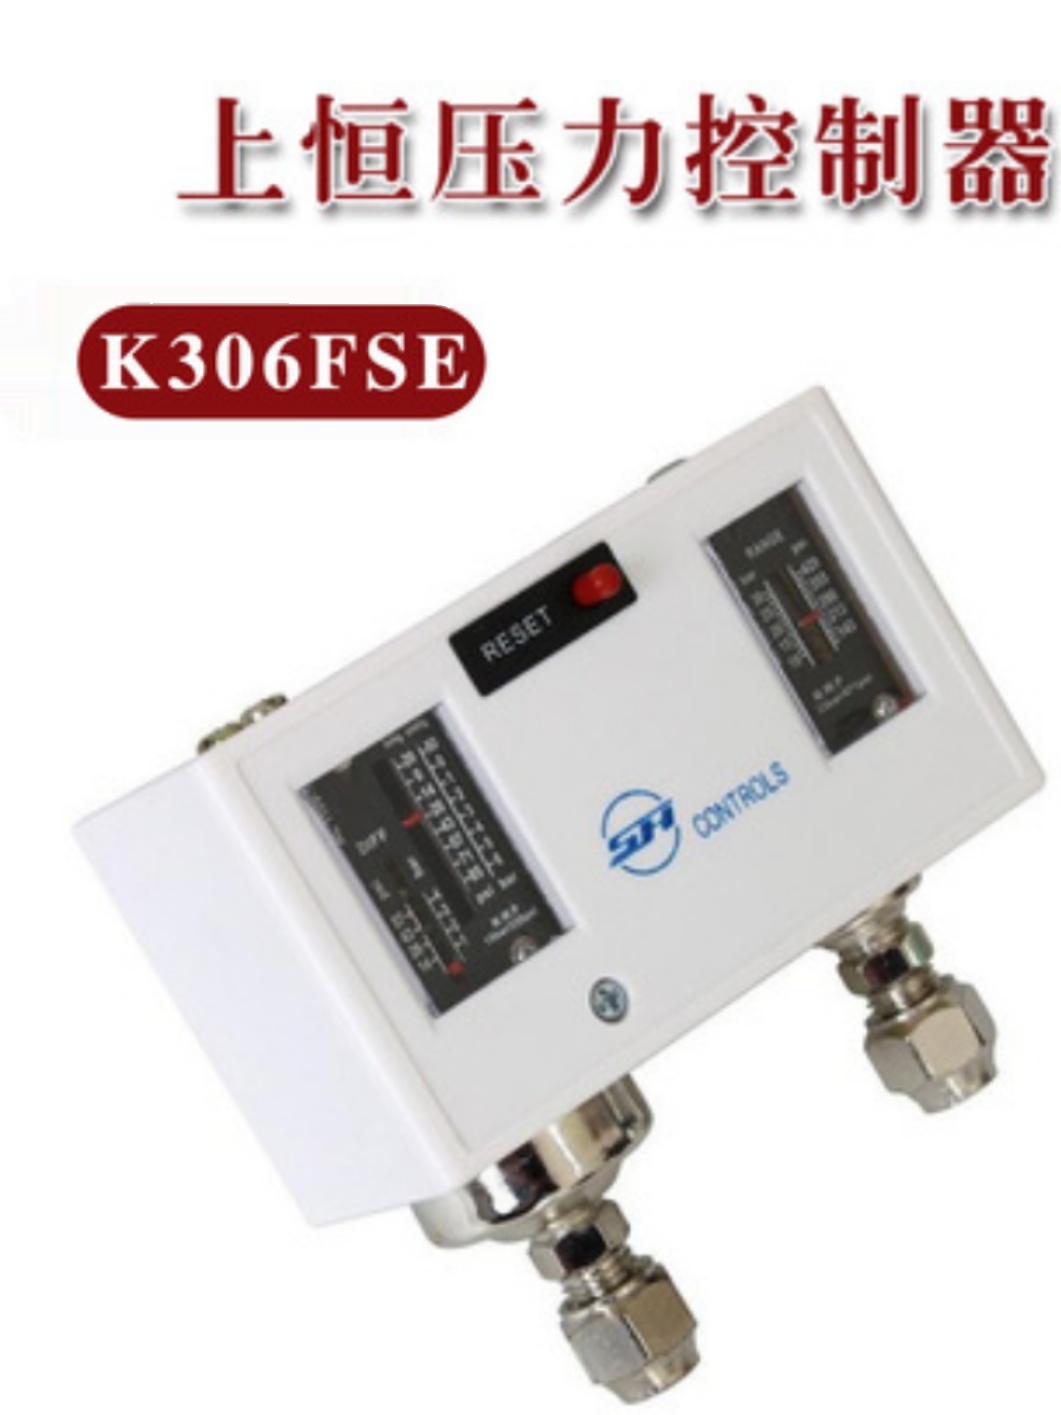 上恒压控器 YK306FSSE 高低压手动 空调冷库制冷机组 压力控制器